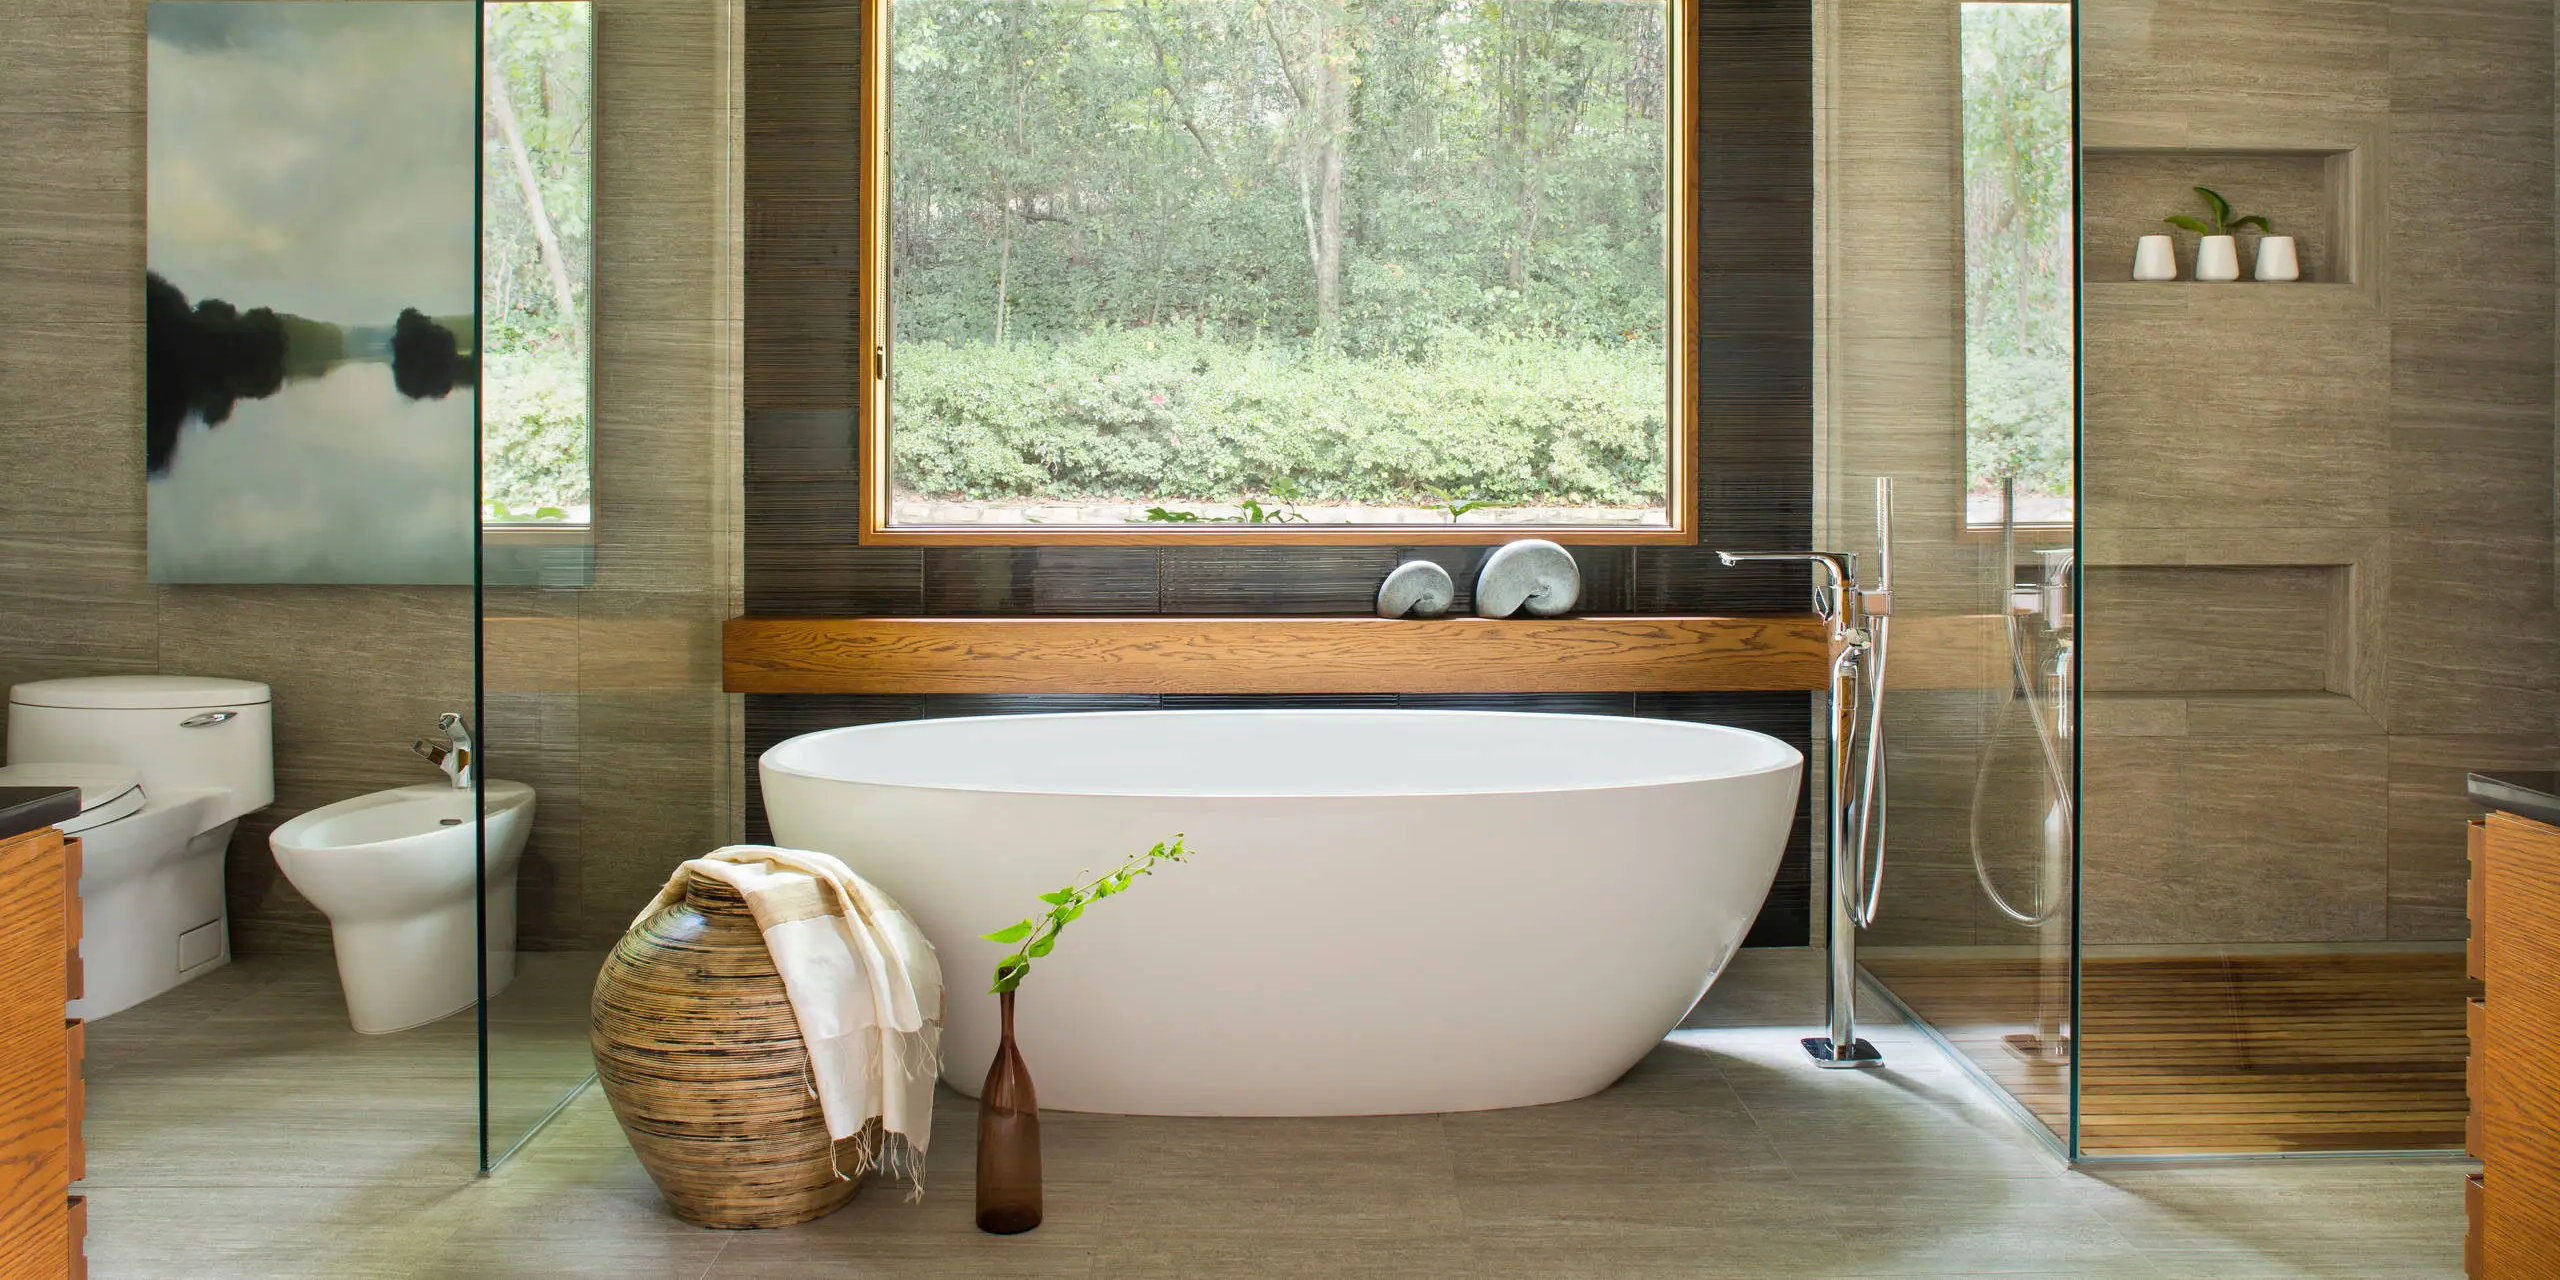 Comment obtenir équilibre et harmonie avec une salle de bain Feng Shui ?